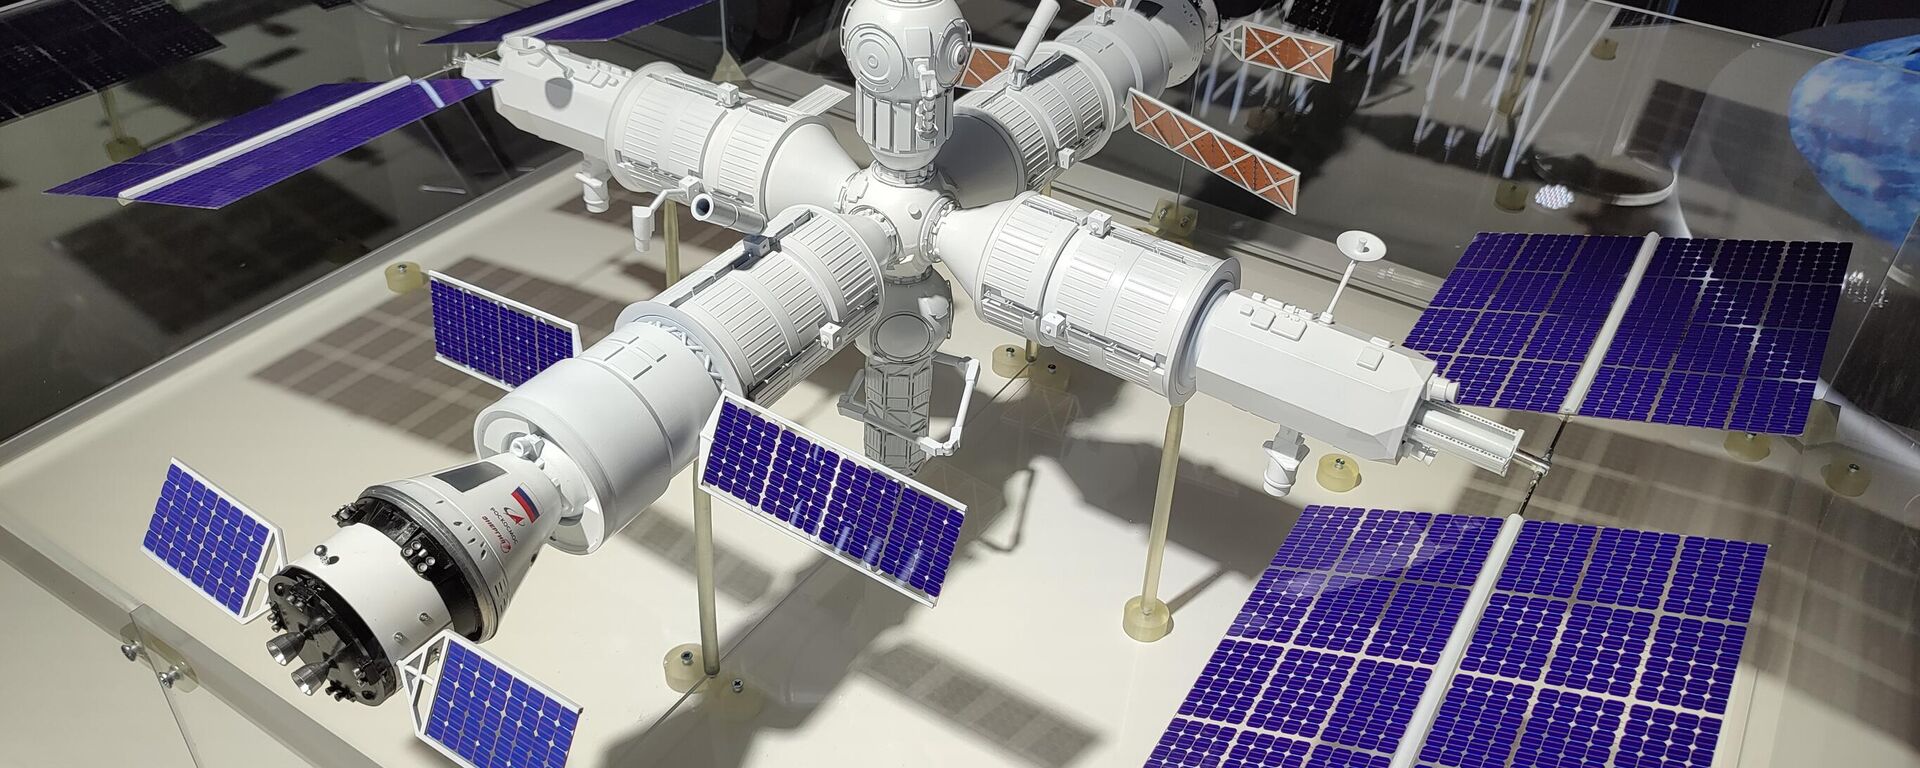 Maqueta de la futura estación orbital rusa presentada en el Foro Army 2022 - Sputnik Mundo, 1920, 24.01.2023